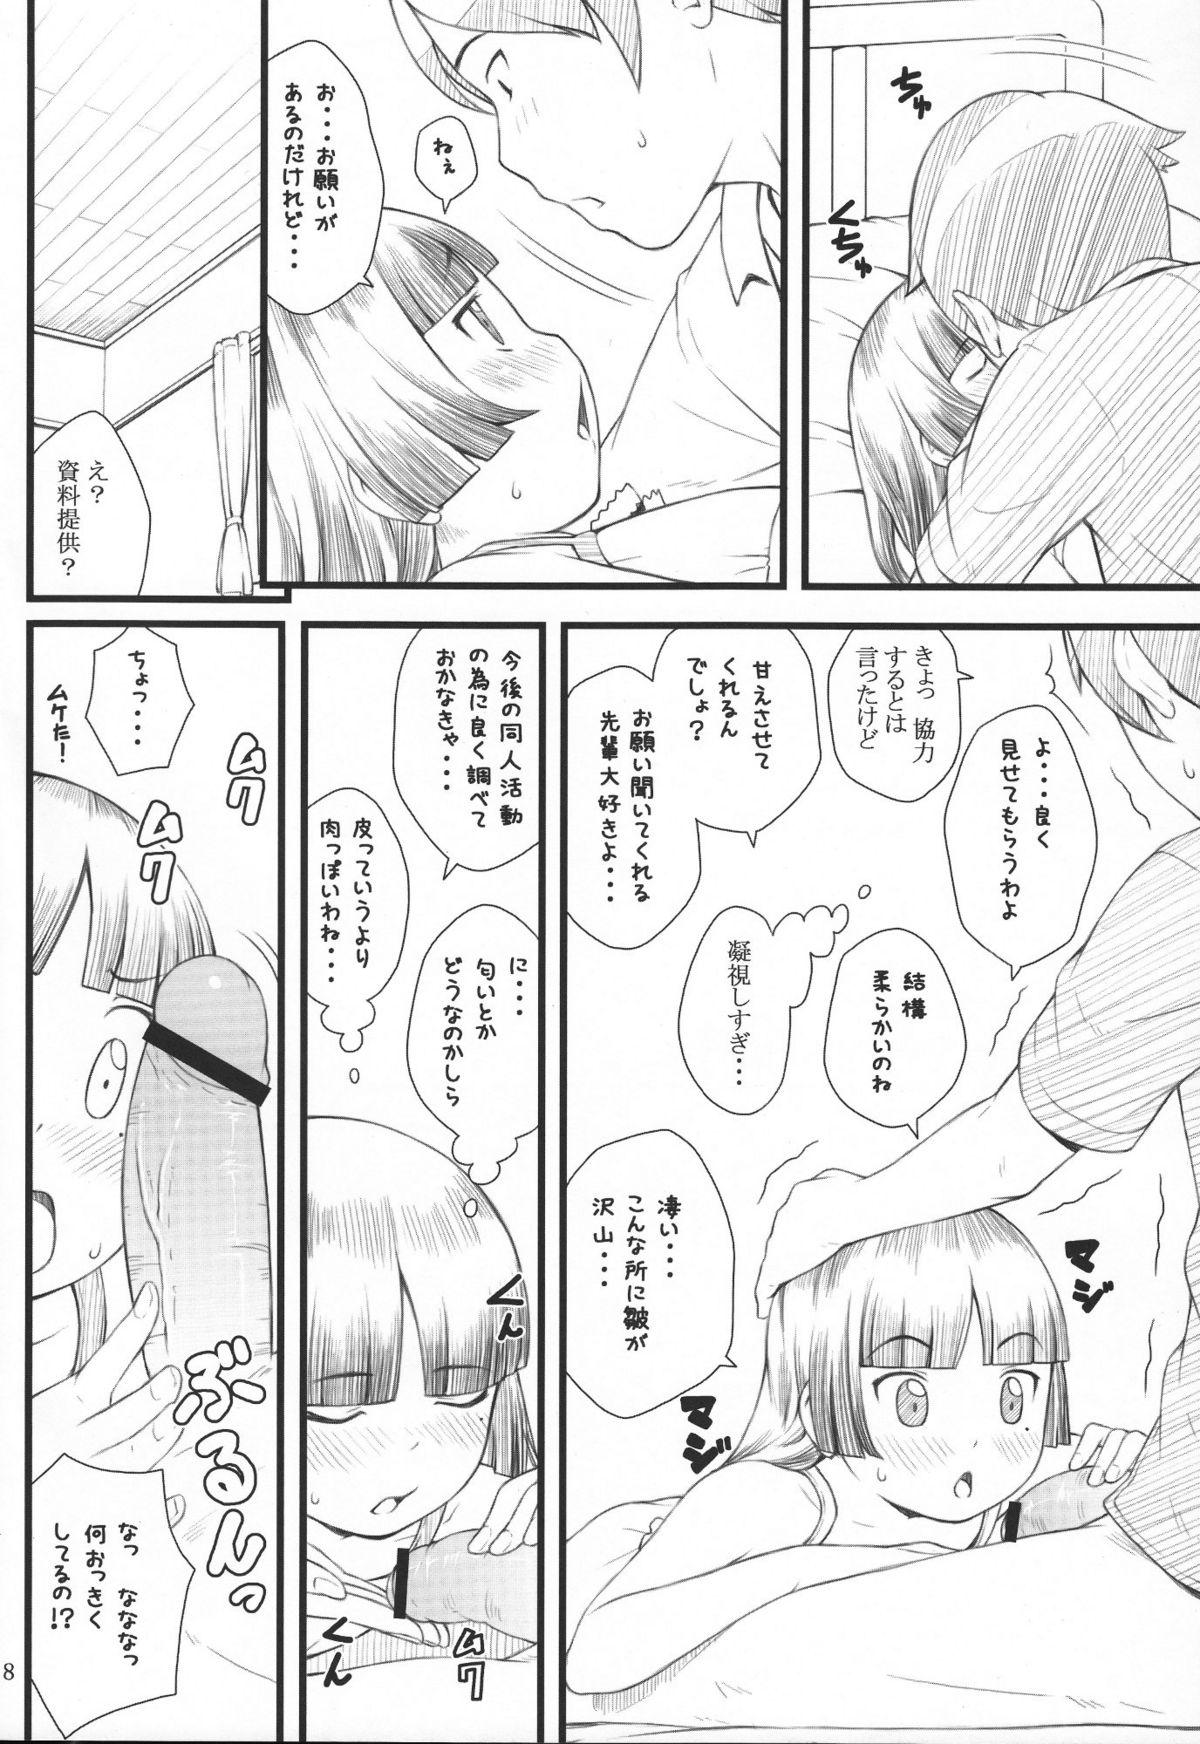 Amature Sex Kuroneko+Shiro=Pink - Ore no imouto ga konna ni kawaii wake ga nai Gay Bang - Page 7